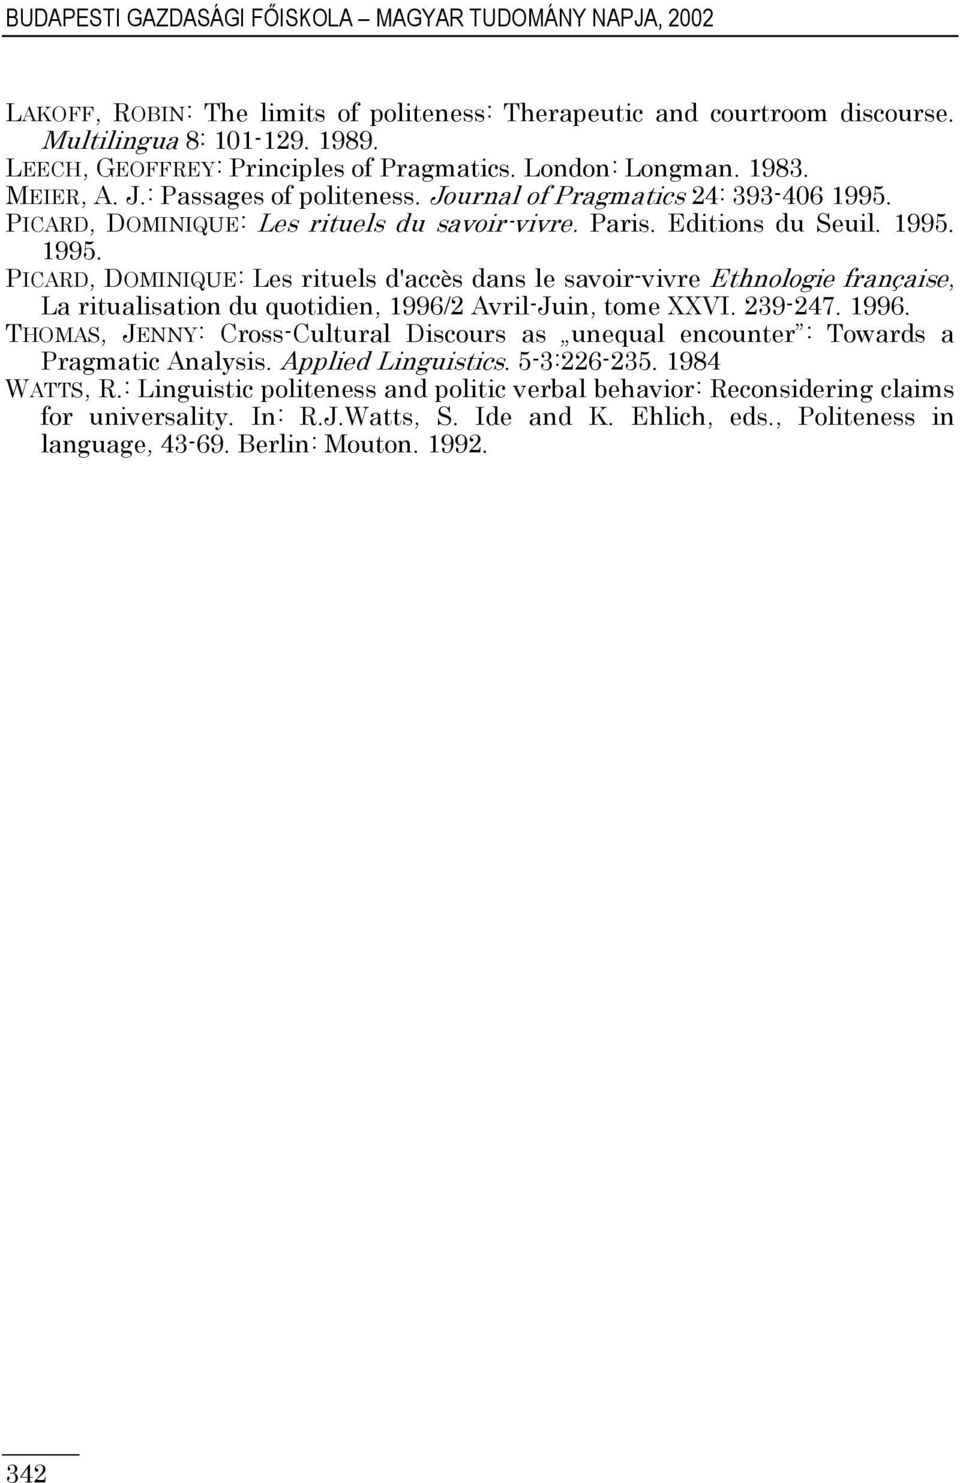 Editions du Seuil. 1995. 1995. PICARD, DOMINIQUE: Les rituels d'accès dans le savoir-vivre Ethnologie française, La ritualisation du quotidien, 1996/